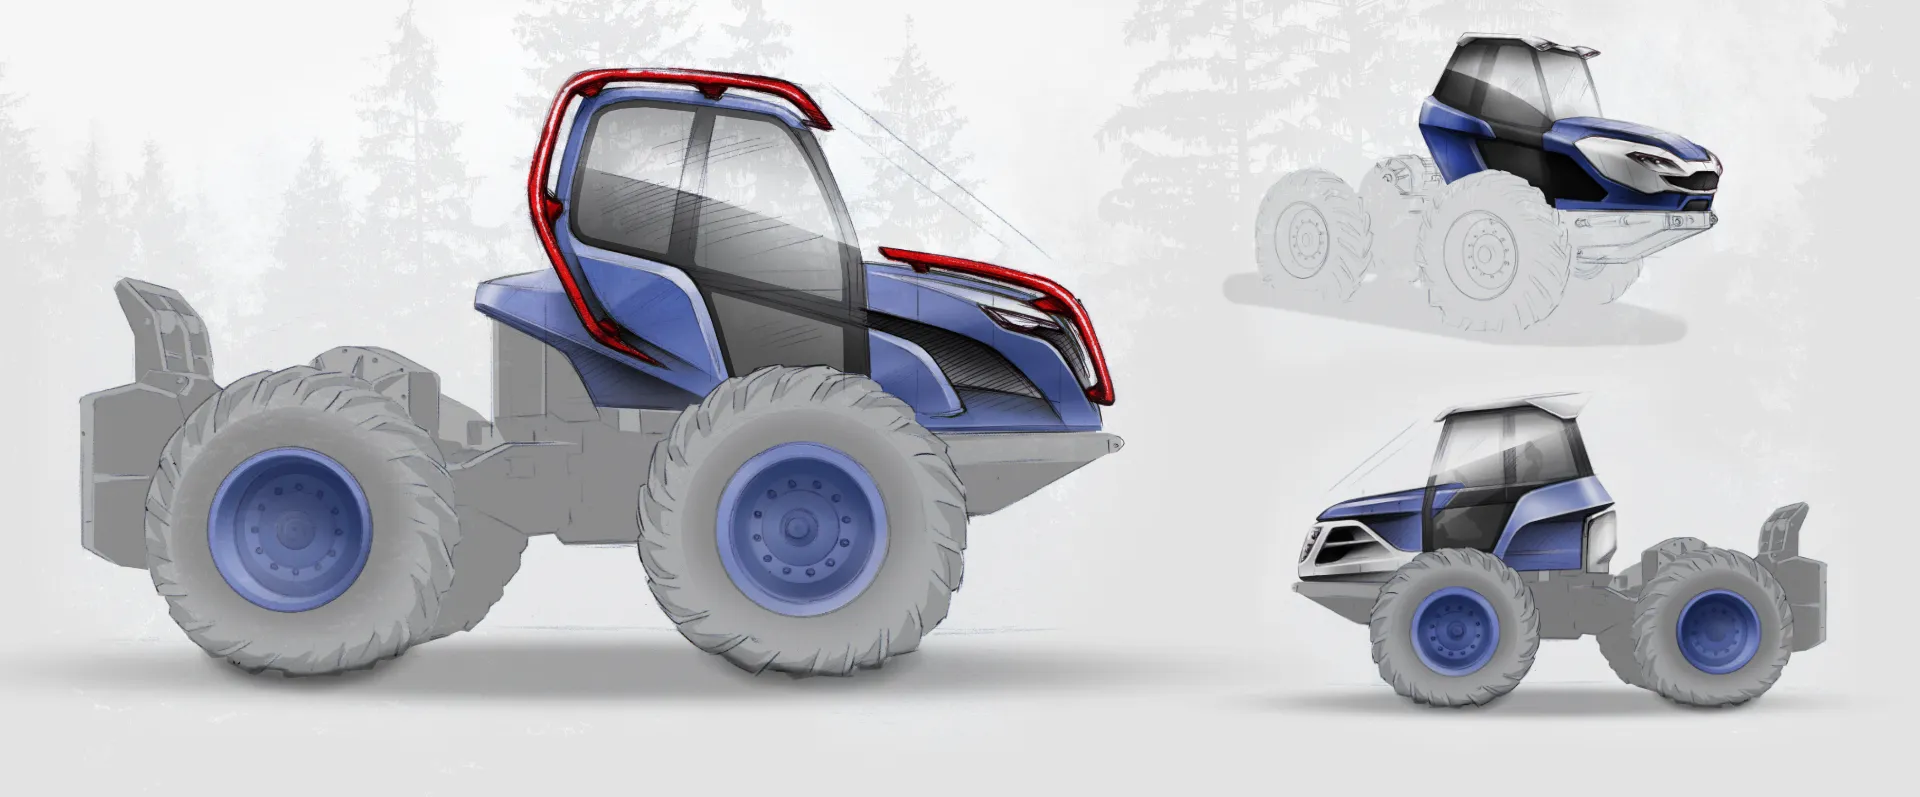 Tractor Concept 02_Design by Werkemotion